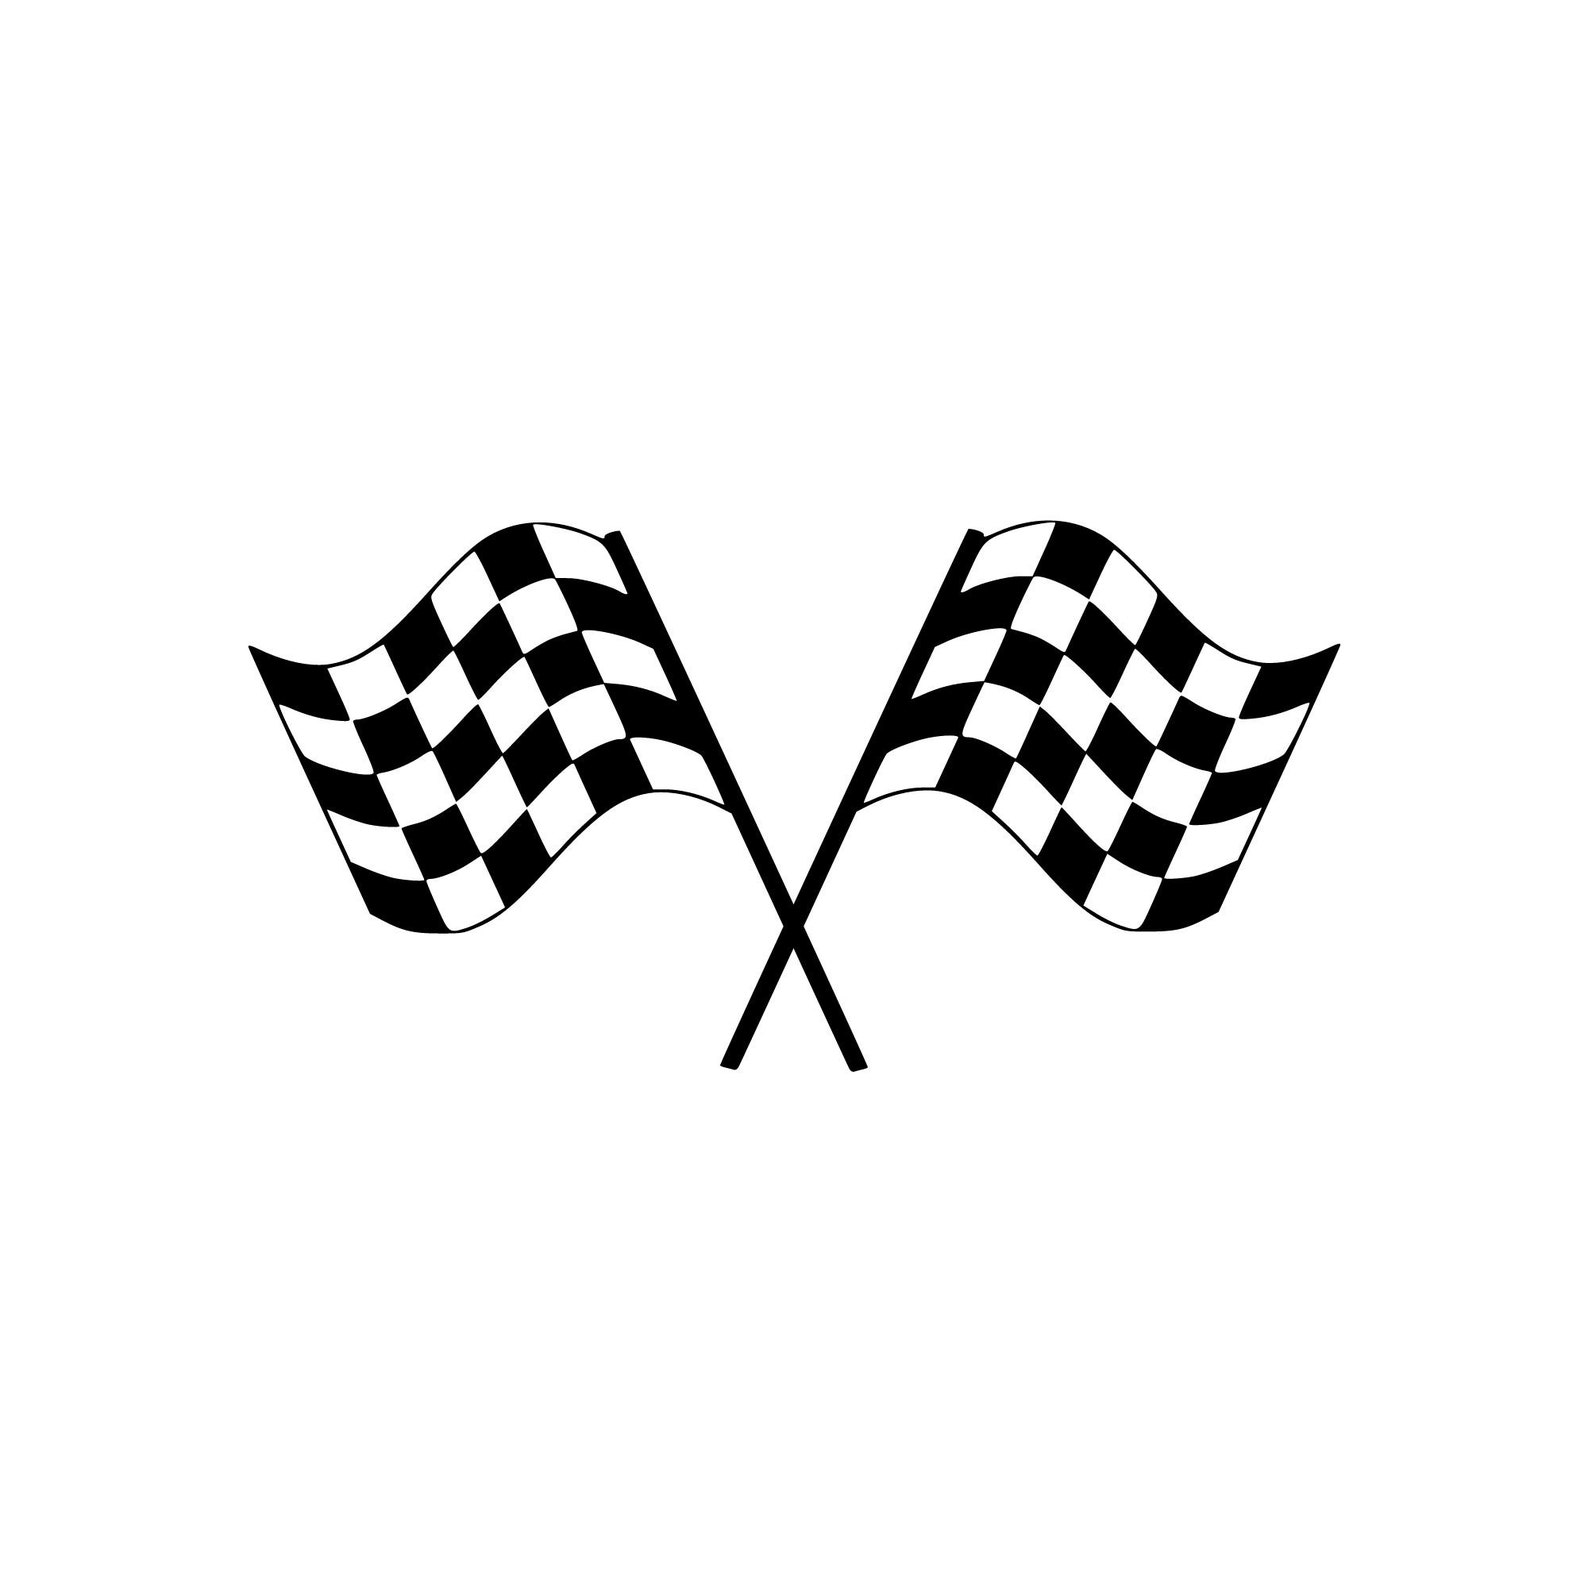 Racing Flags SVG, Racing Flags PNG, Racing Flags Image, Racing Flag SVG ...